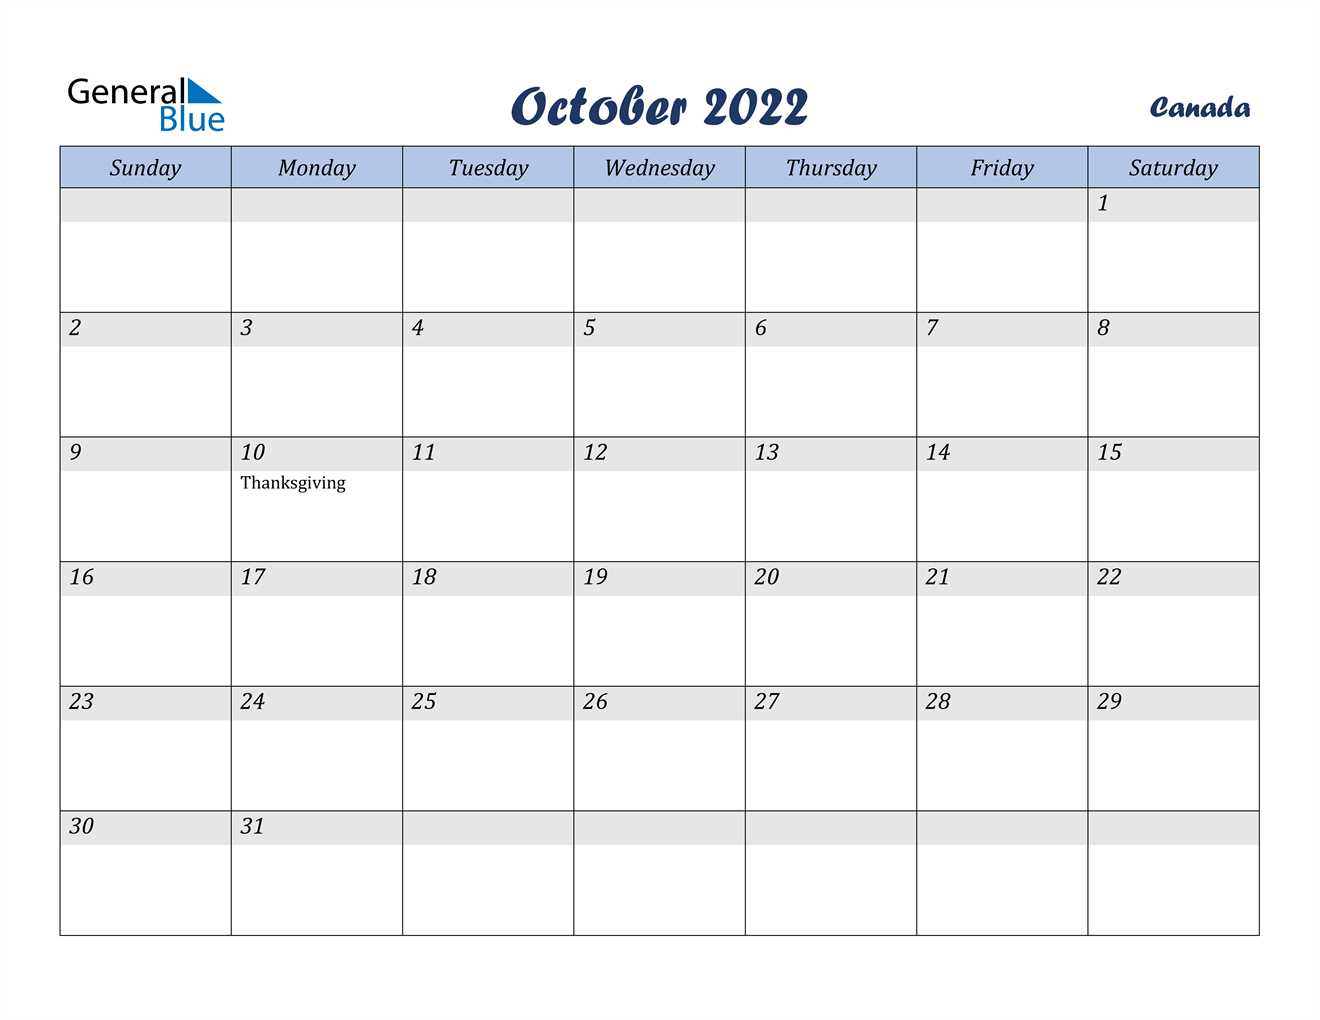 October 2022 Calendar - Canada